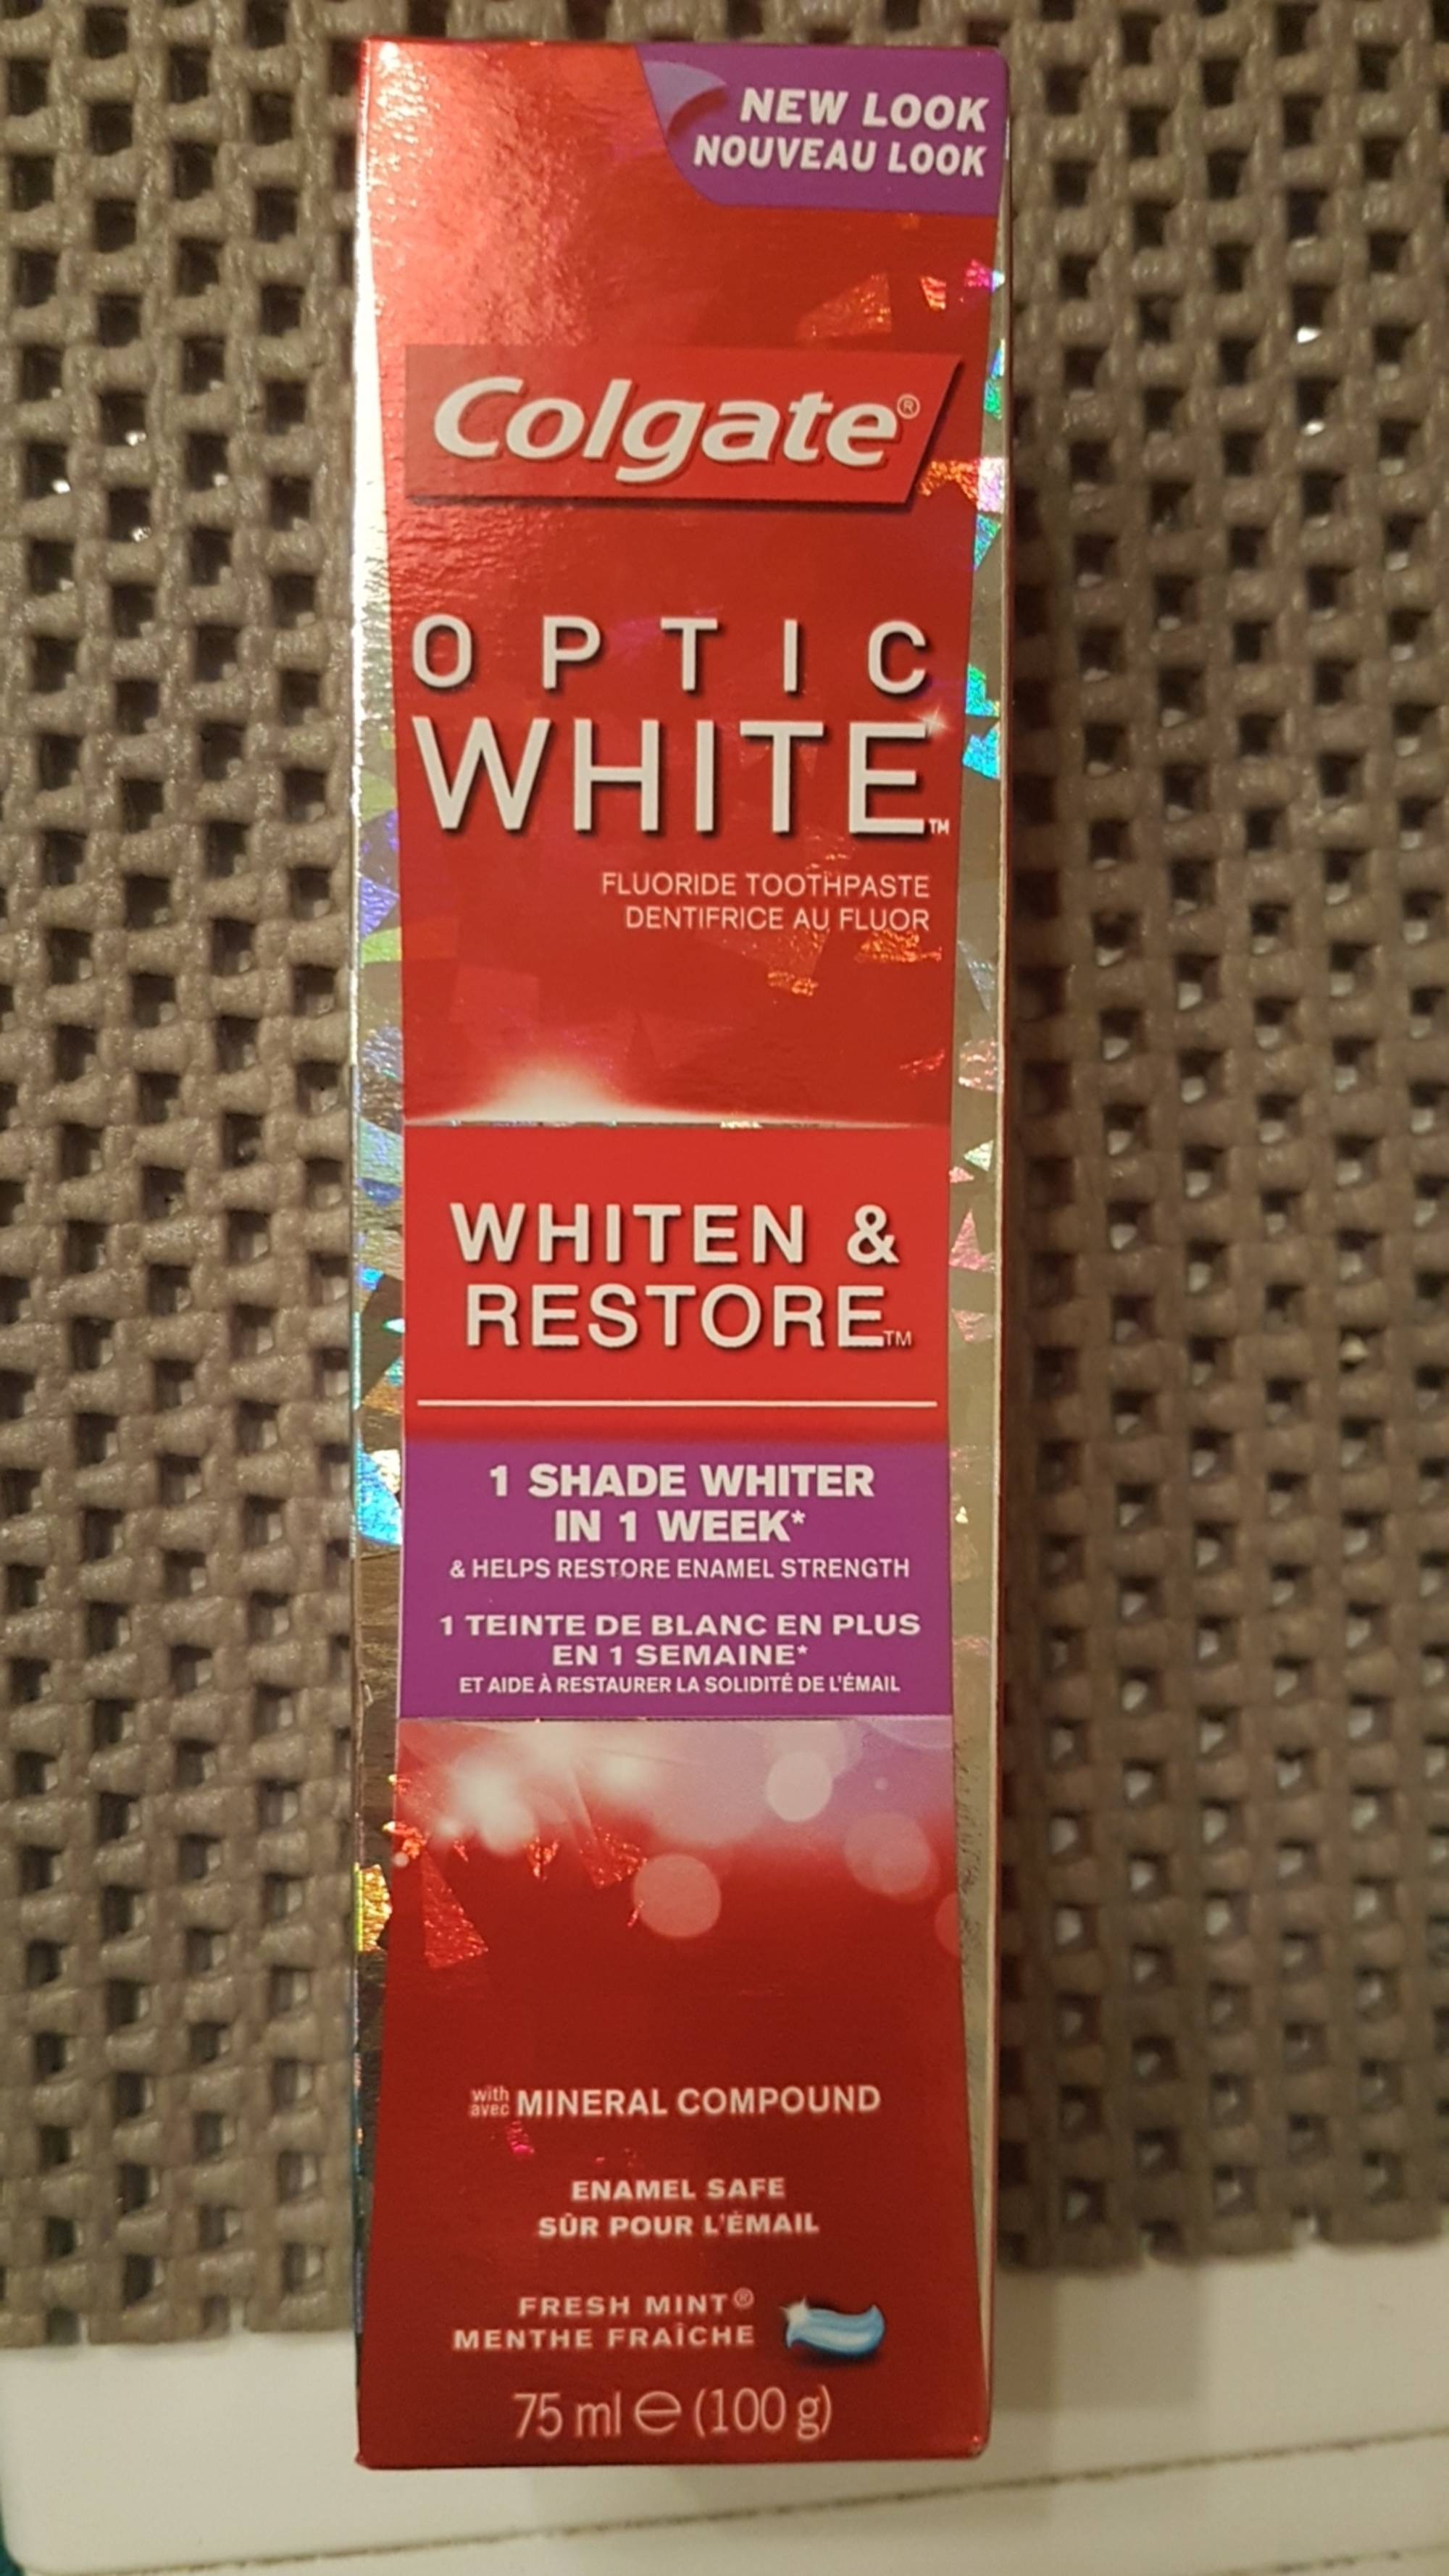 COLGATE - Optic white - Dentifrice au fluor